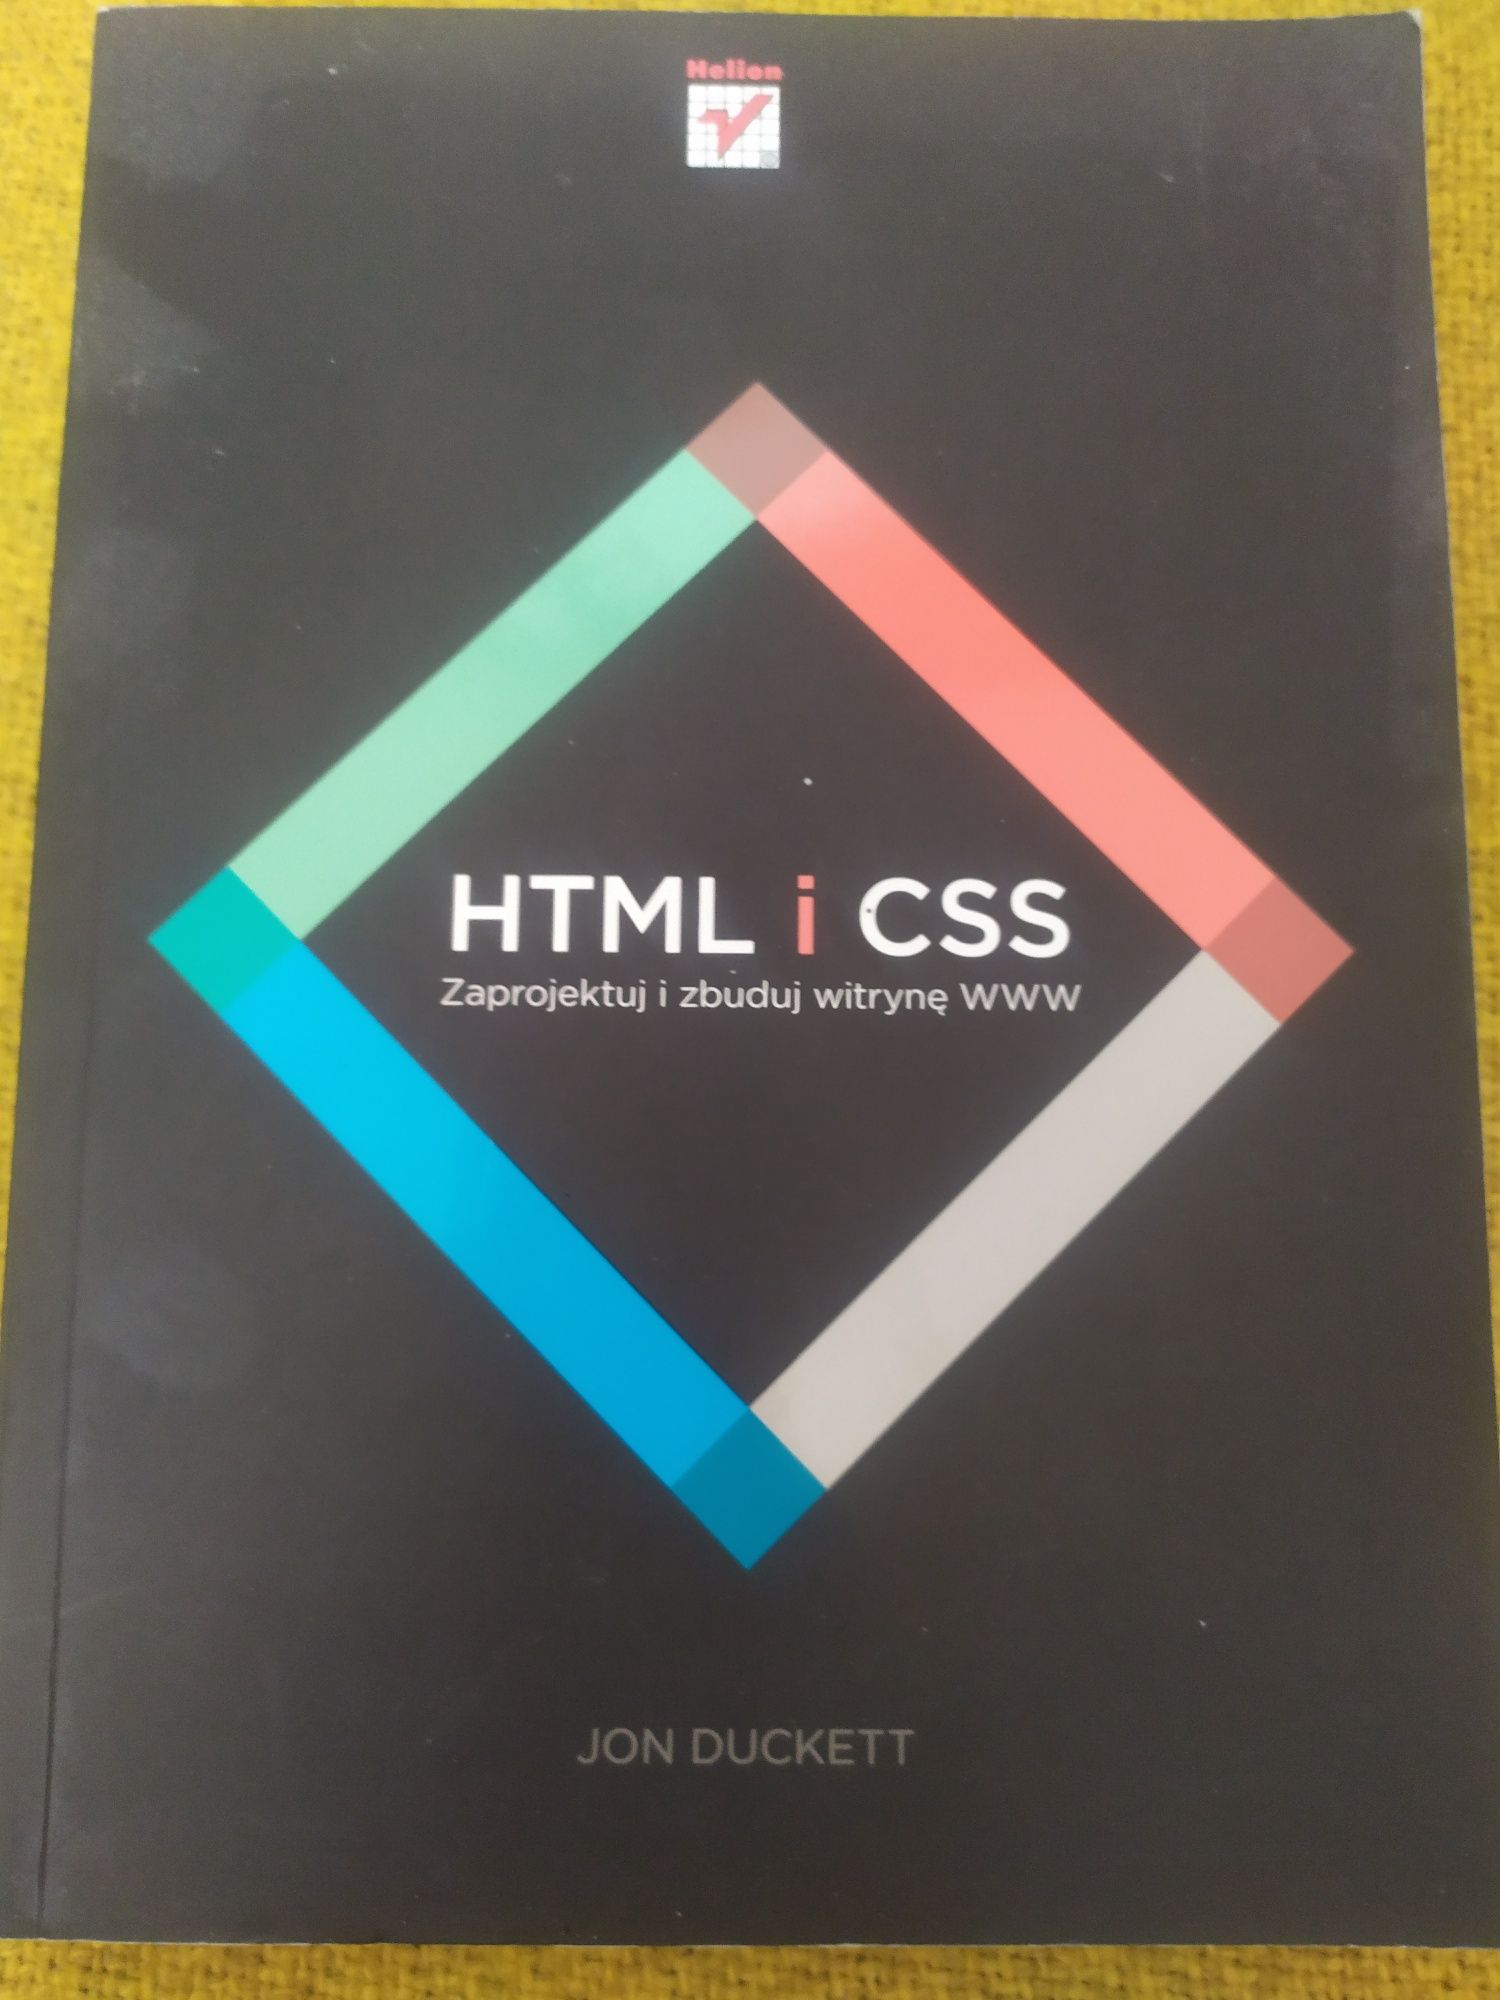 HTML i CSS Jon Duckett.Zaprojektuj i zbuduj witrynę www na Prezent.